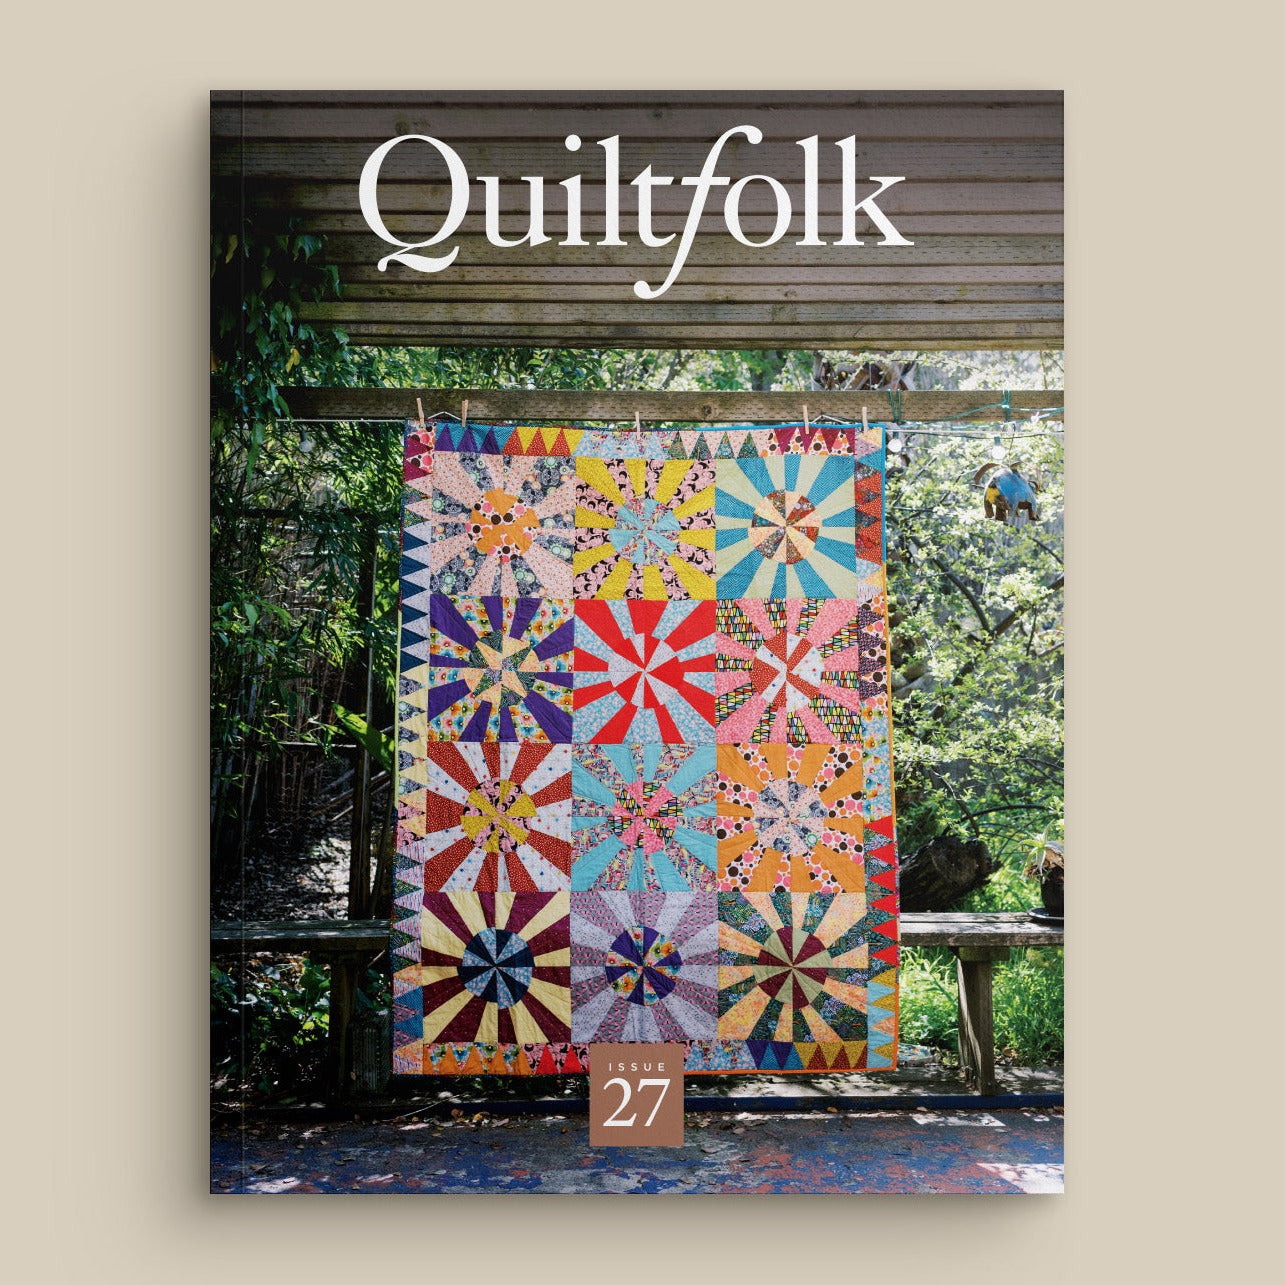 Quiltfolk Magazine Issue 27